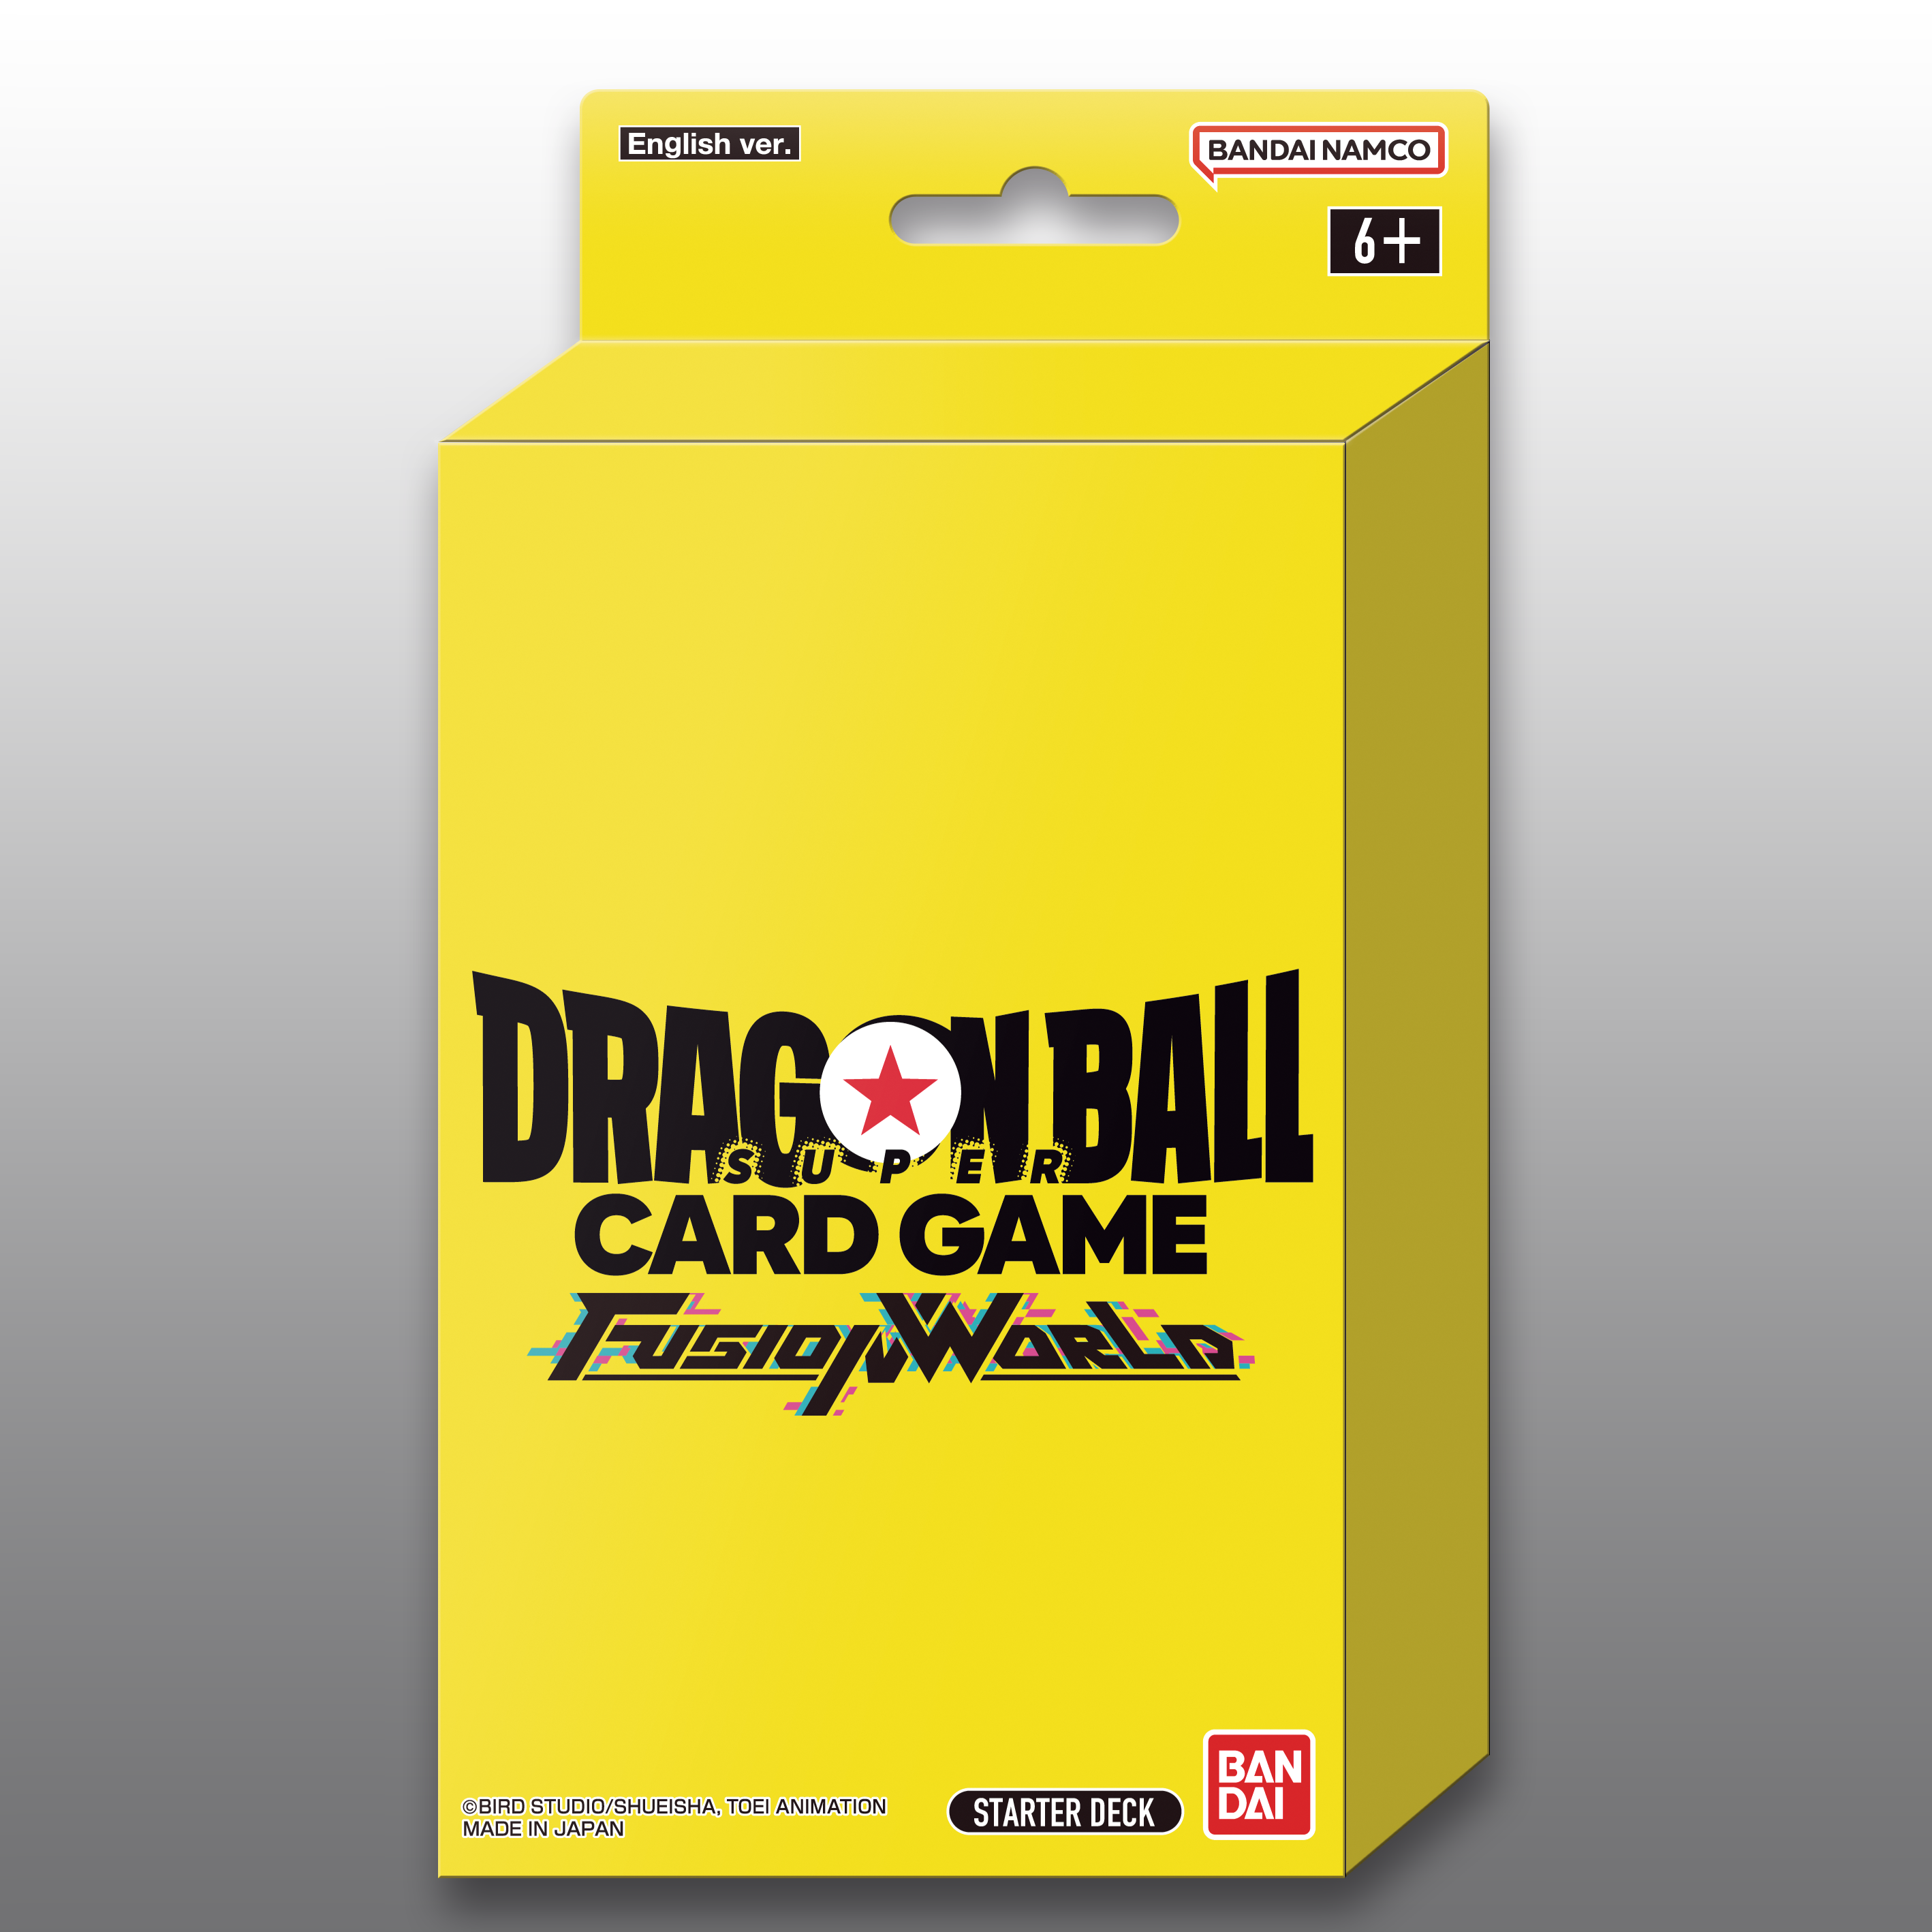 ドラゴンボール超 カードゲーム フュージョンワールド：フリーザ [FS04] スターターデッキ